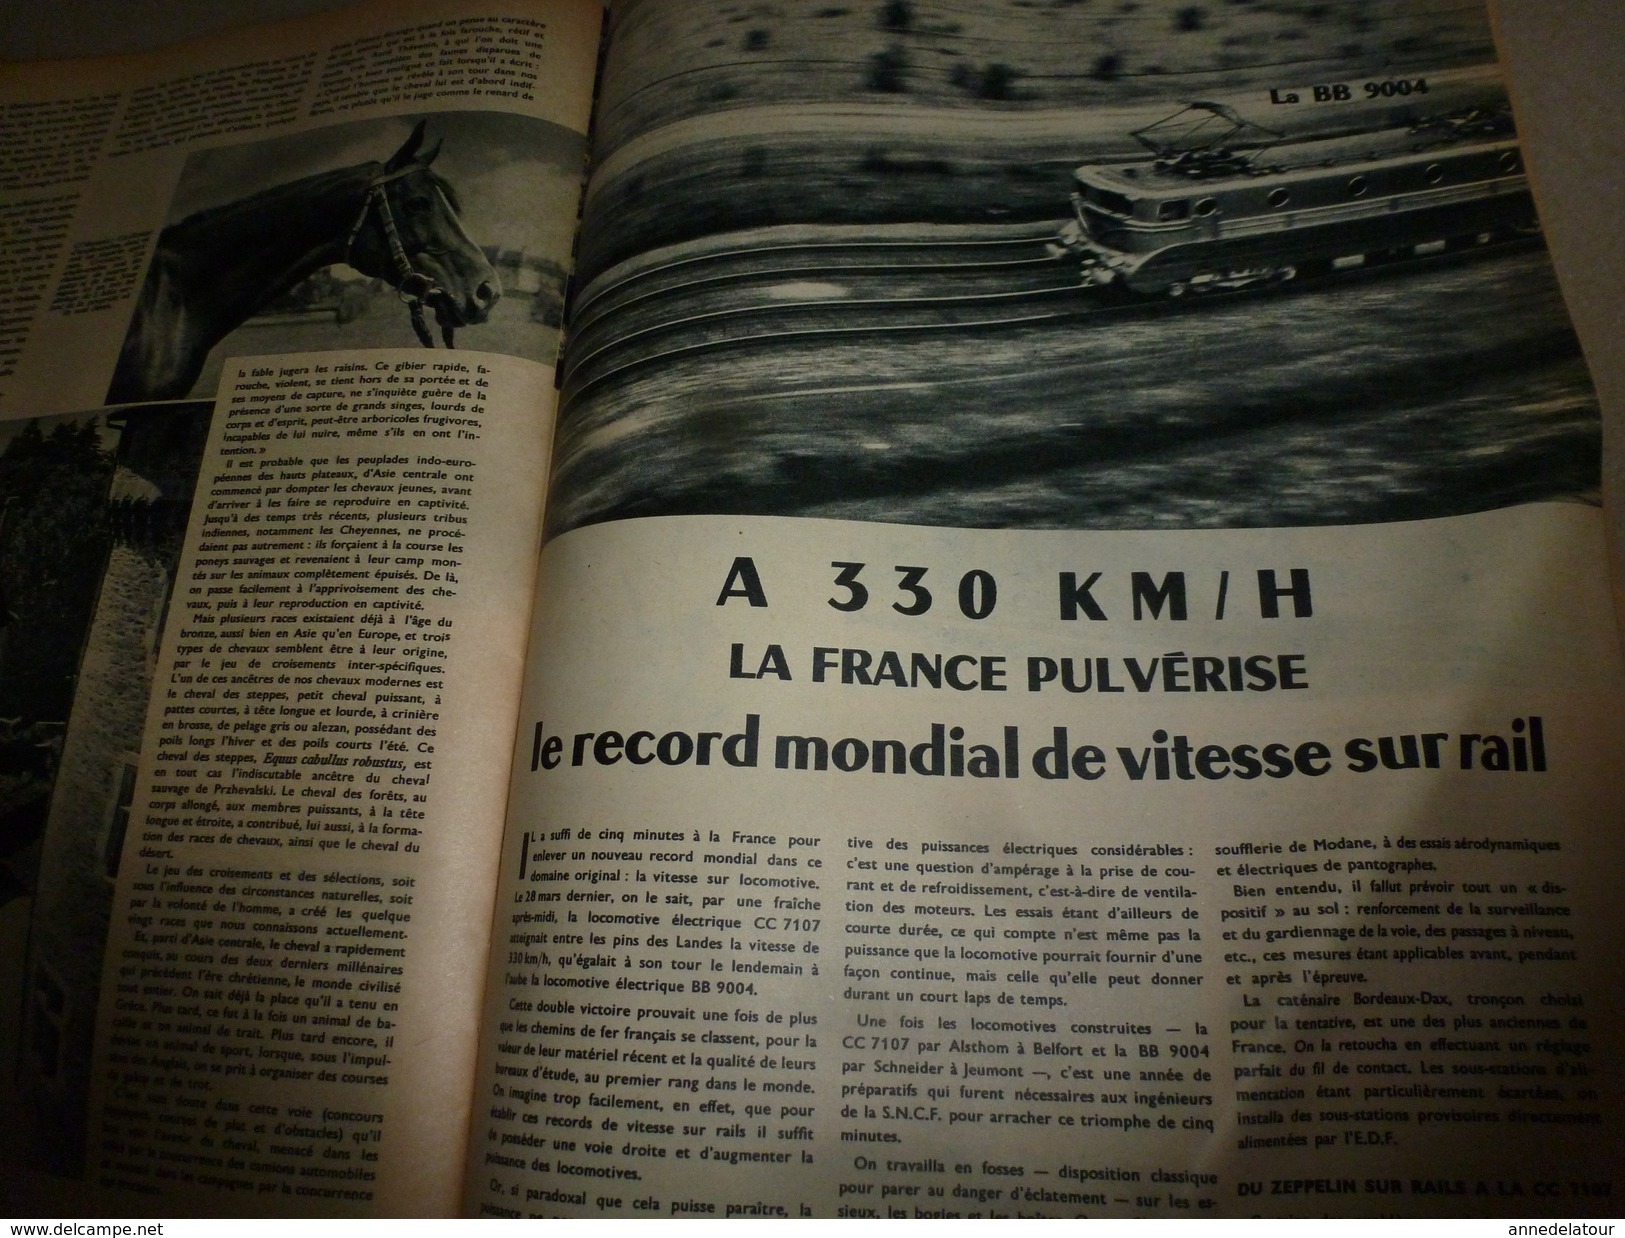 1955 SETA :Histoire du CHEVAL;Bombe A;Le fourmilion;Record vitesse sur rail;Transistors ;Les Centuriations romaines;etc